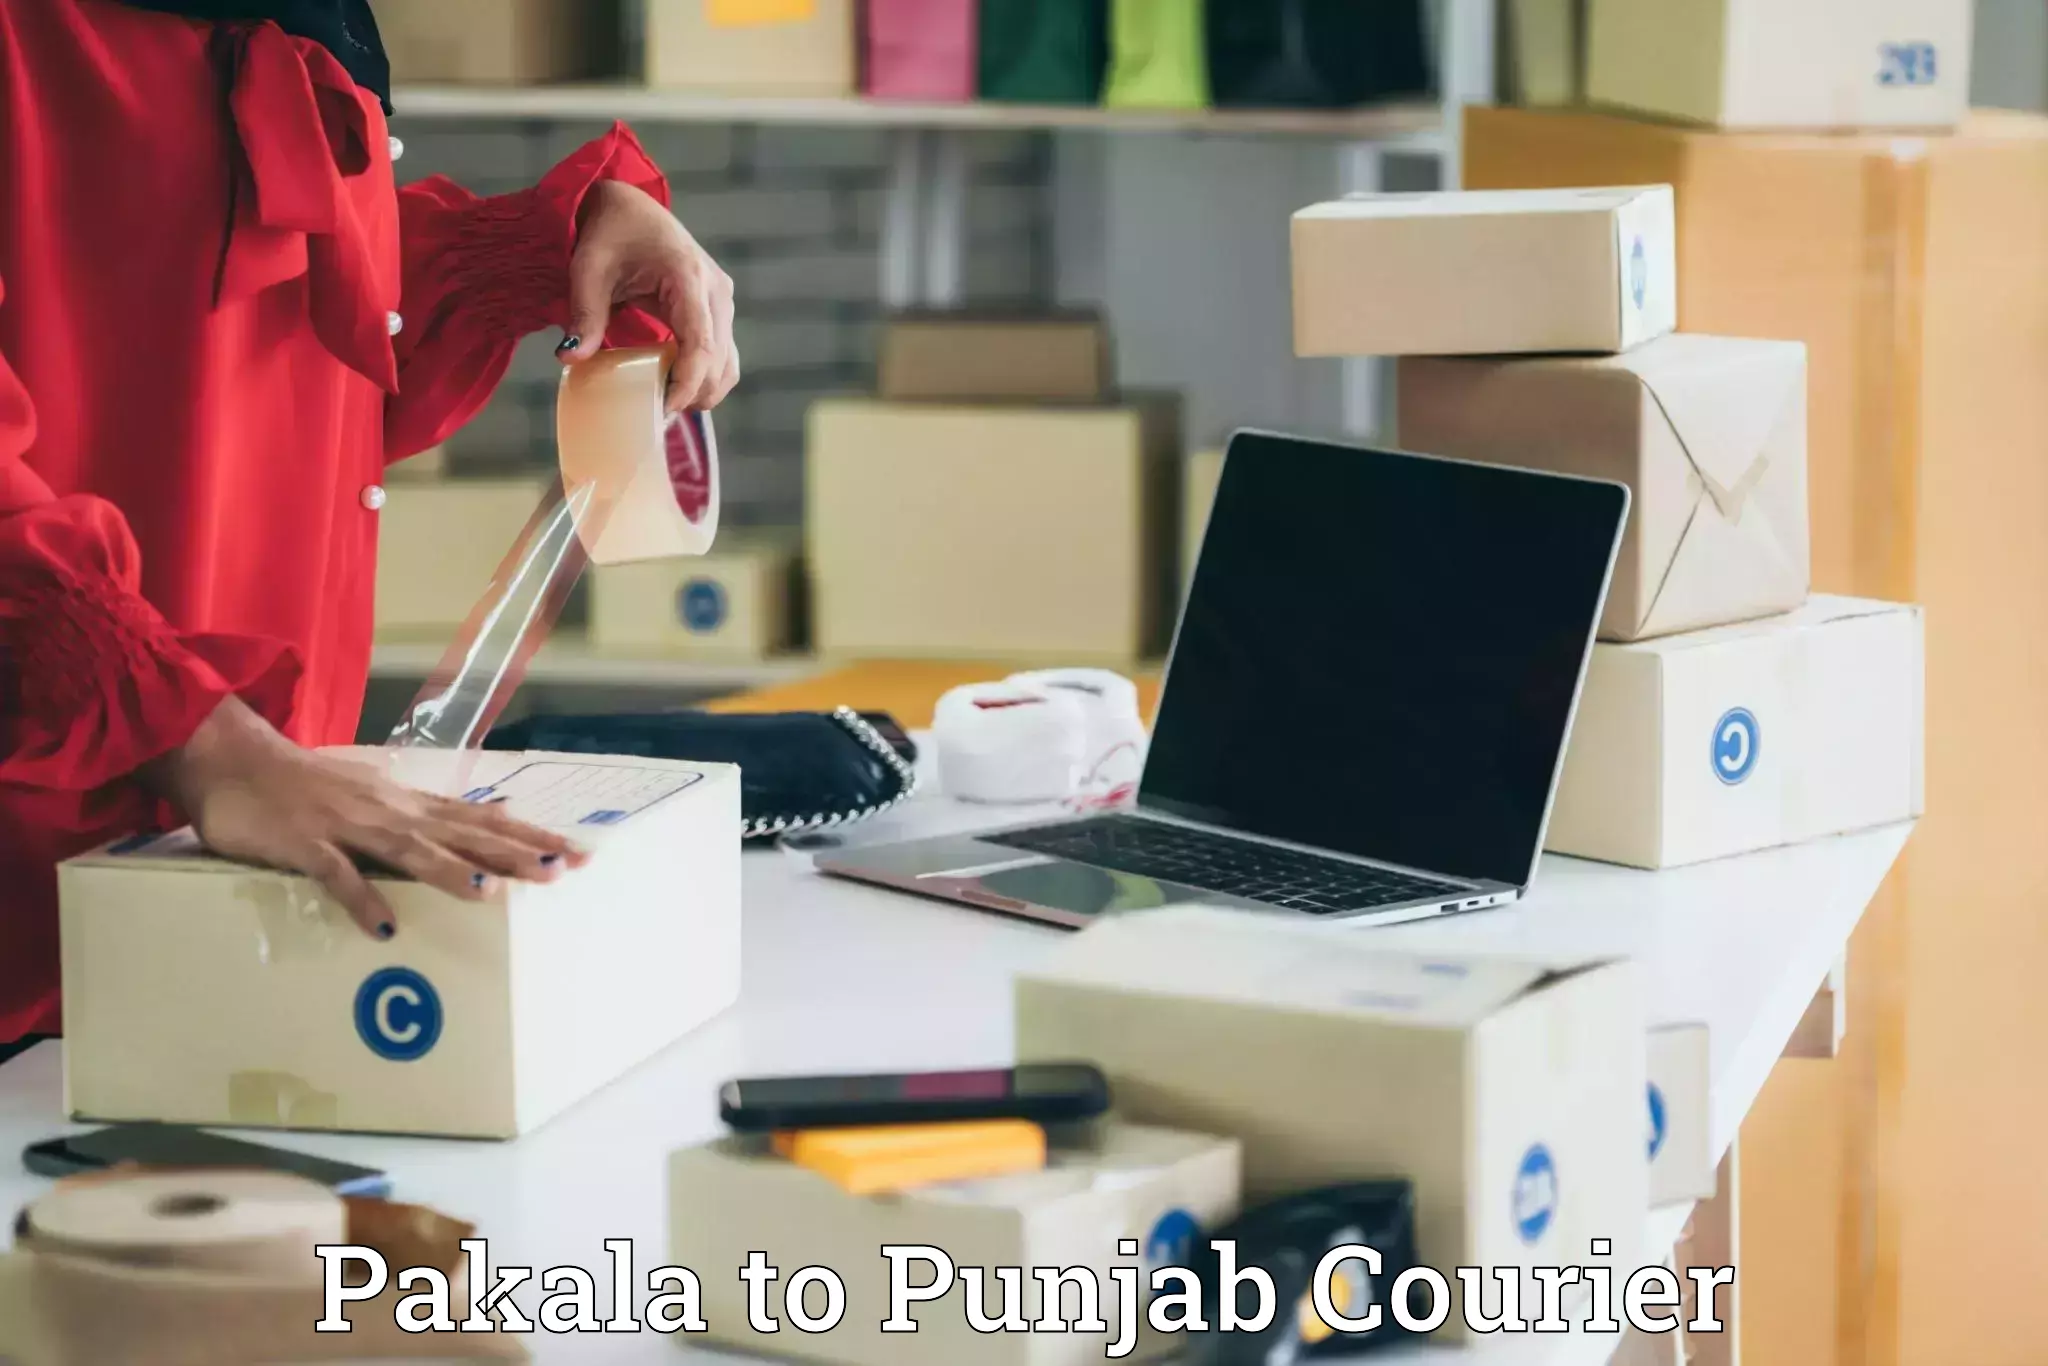 Delivery service partnership Pakala to Batala